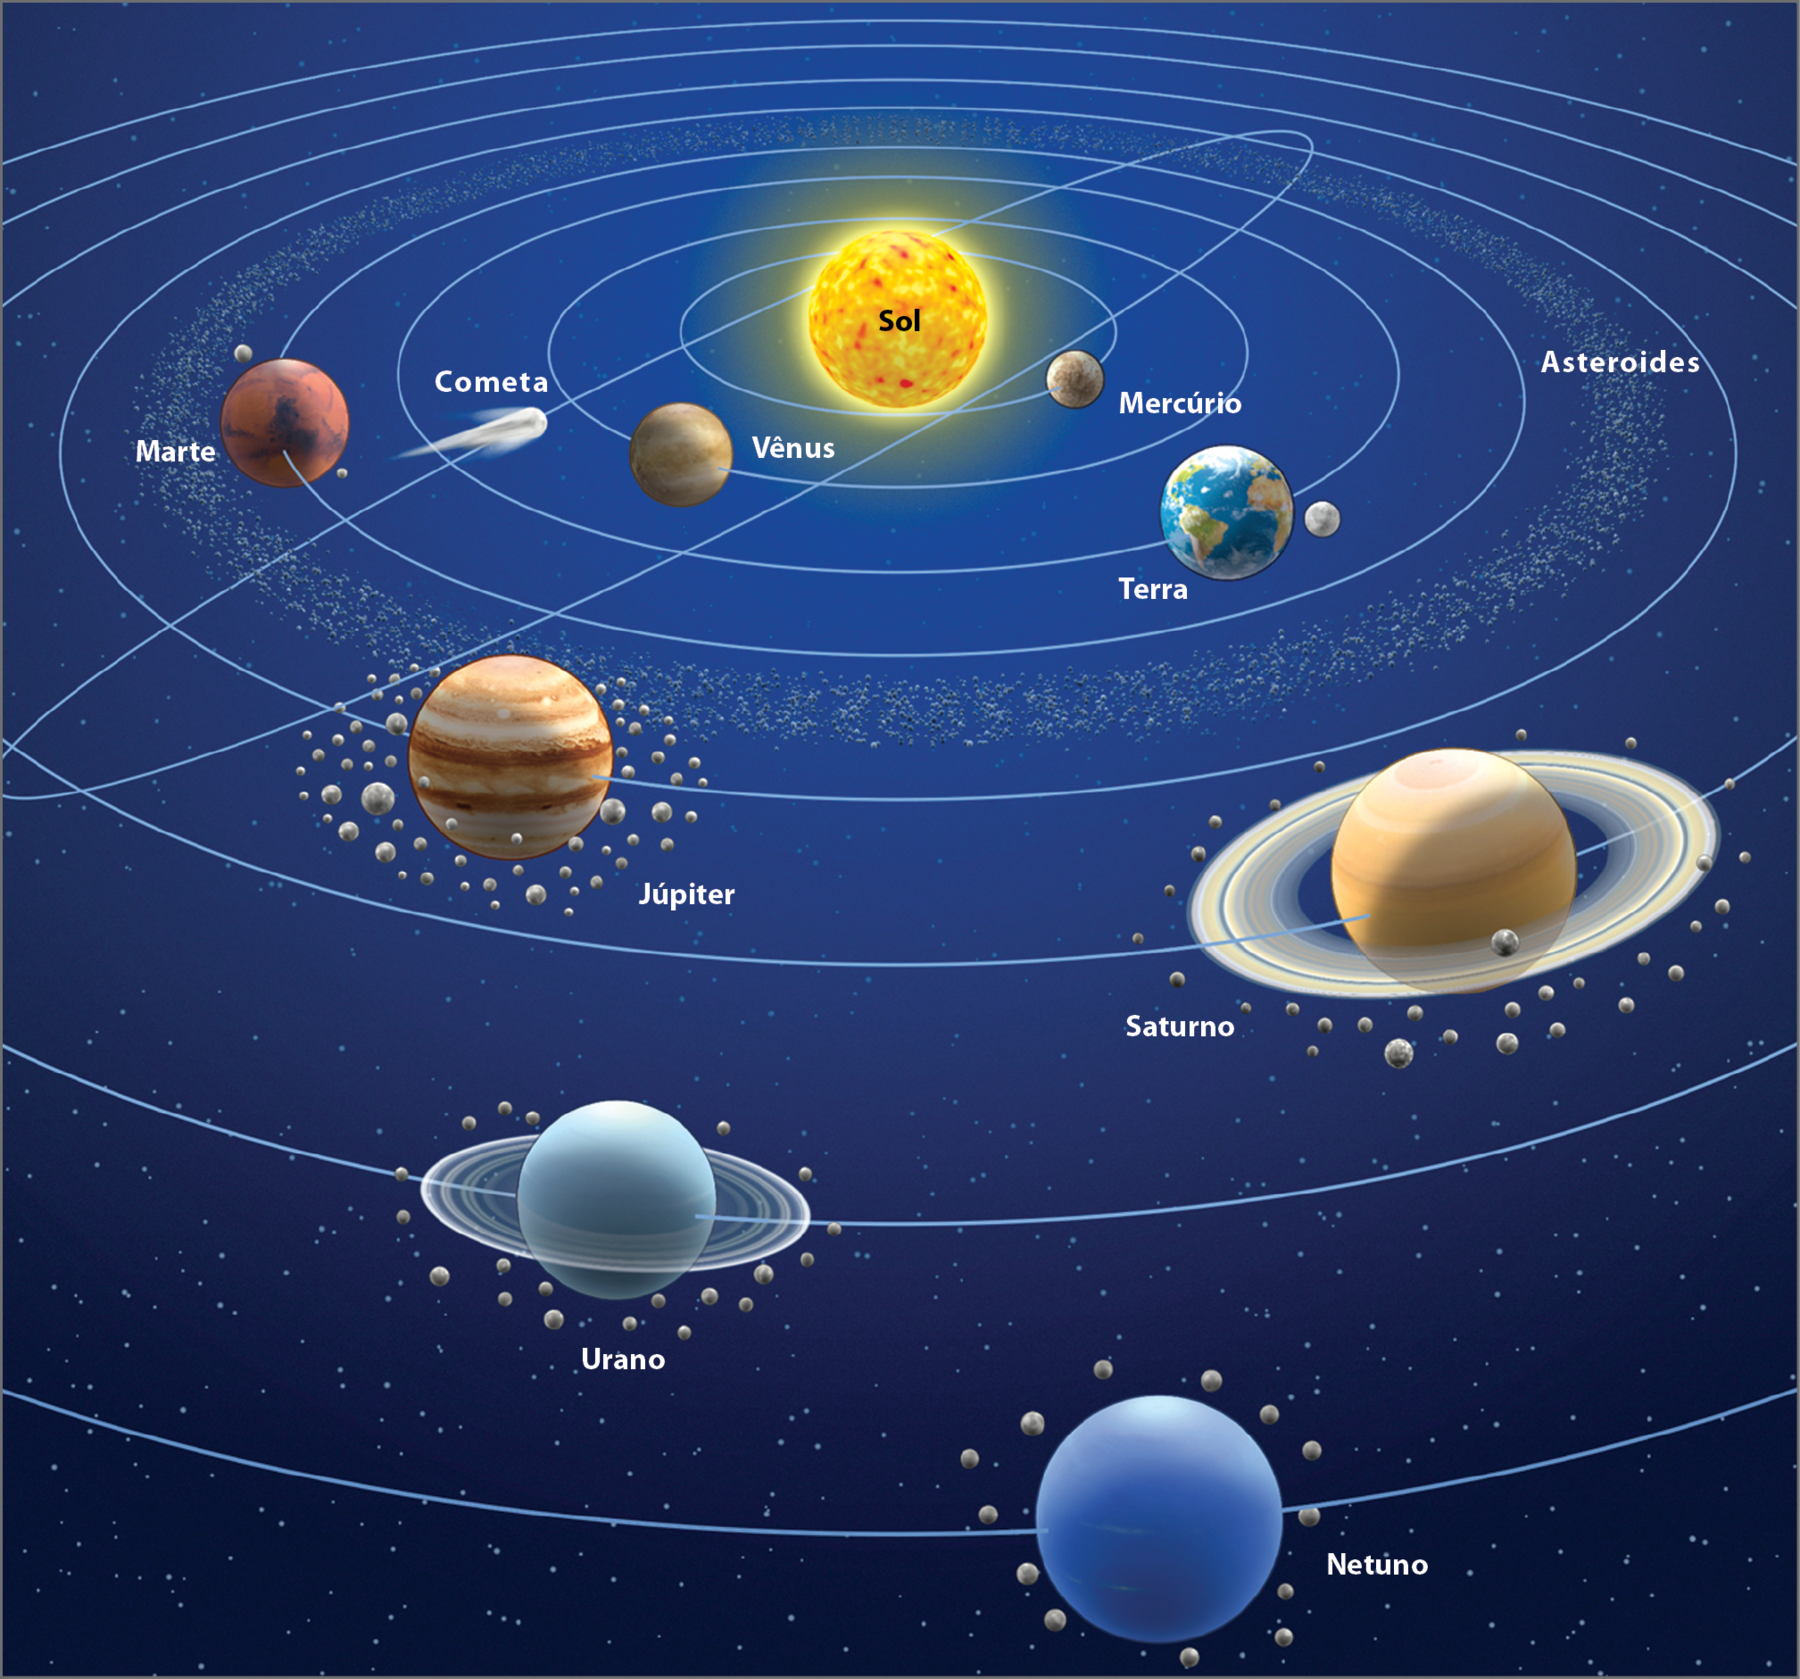 Ilustração. Representação do Sistema Solar, composto por oito planetas dispostos cada um sobre uma linha circular que representa a órbita desses planetas ao redor do Sol.
No centro está o Sol. A ordem das órbitas dos planetas, a partir do Sol é  Mercúrio; Vênus; Terra, com a Lua ao seu lado; Marte, seguido de uma faixa de asteroides entre a sua órbita e a de Júpiter, que vem na sequência; depois Saturno e Urano, ambos com anéis ao redor deles; e , finalmente, Netuno.